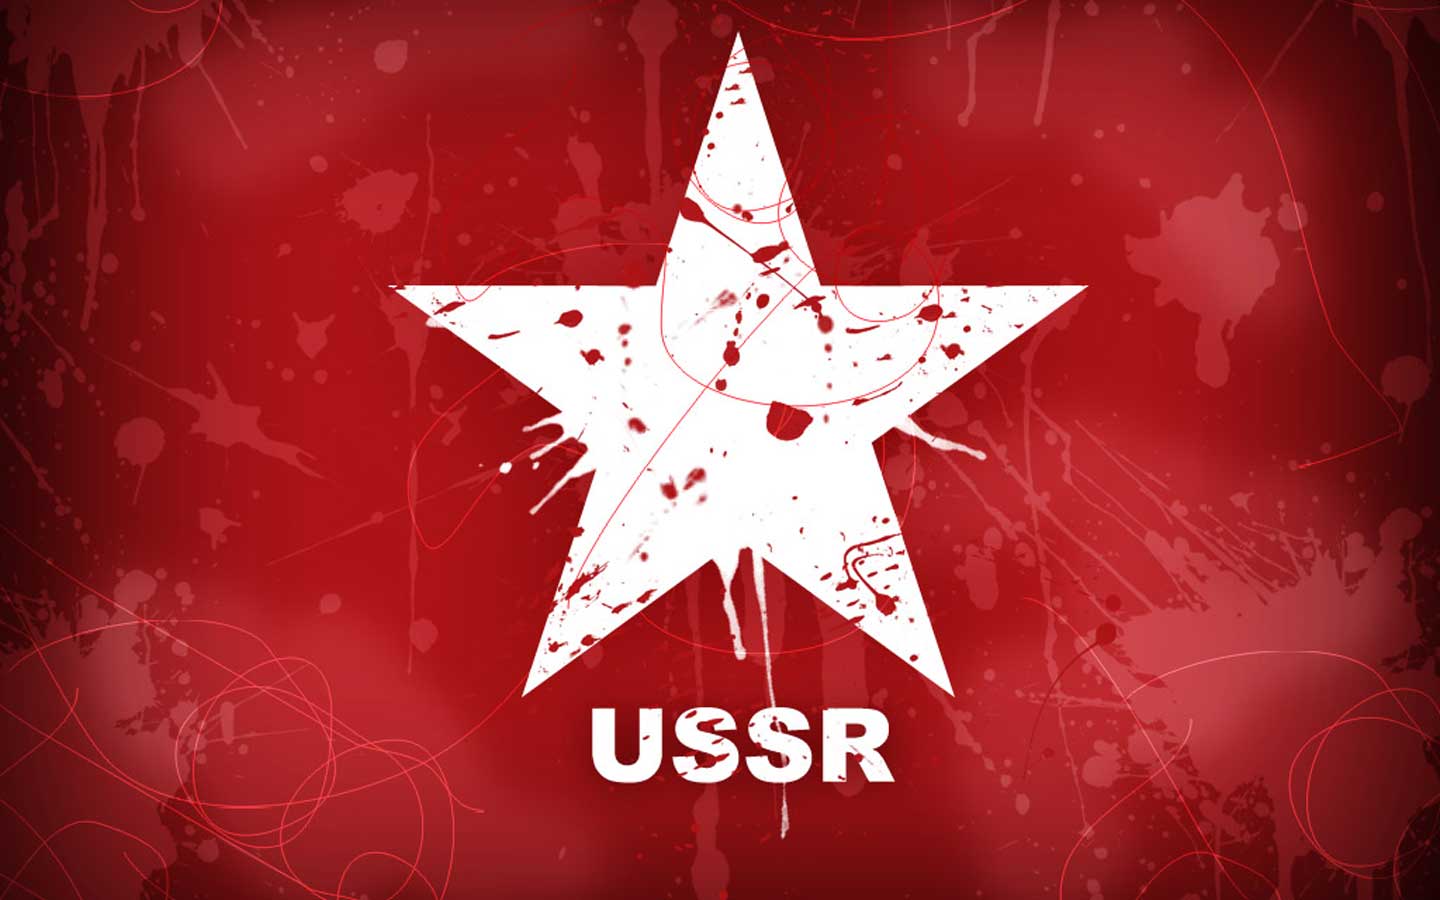 Wallpaper For > Soviet Union Wallpaper